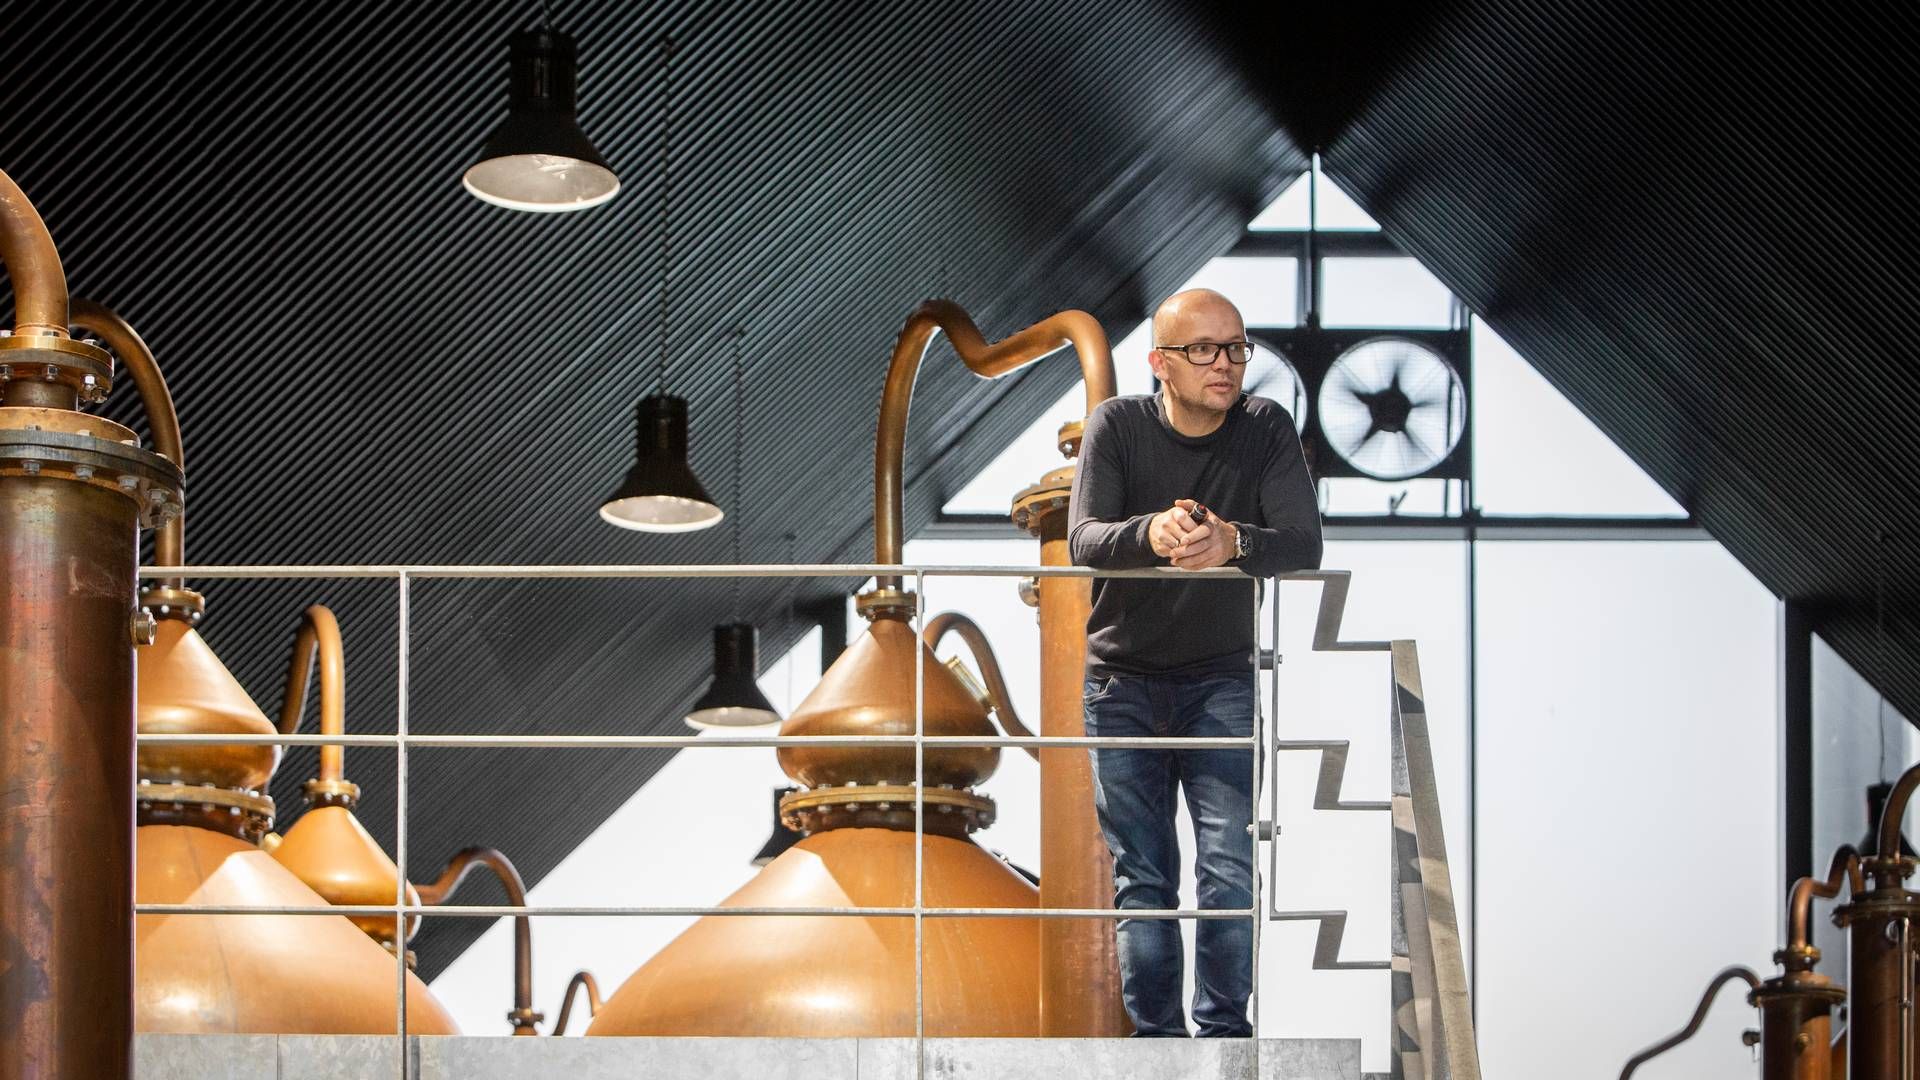 "Det koster jo noget at sadle om og finde nye løsninger," udtaler Lasse Vesterby, der er adm. direktør i Stauning Whisky. | Foto: Pr/stauning Whisky